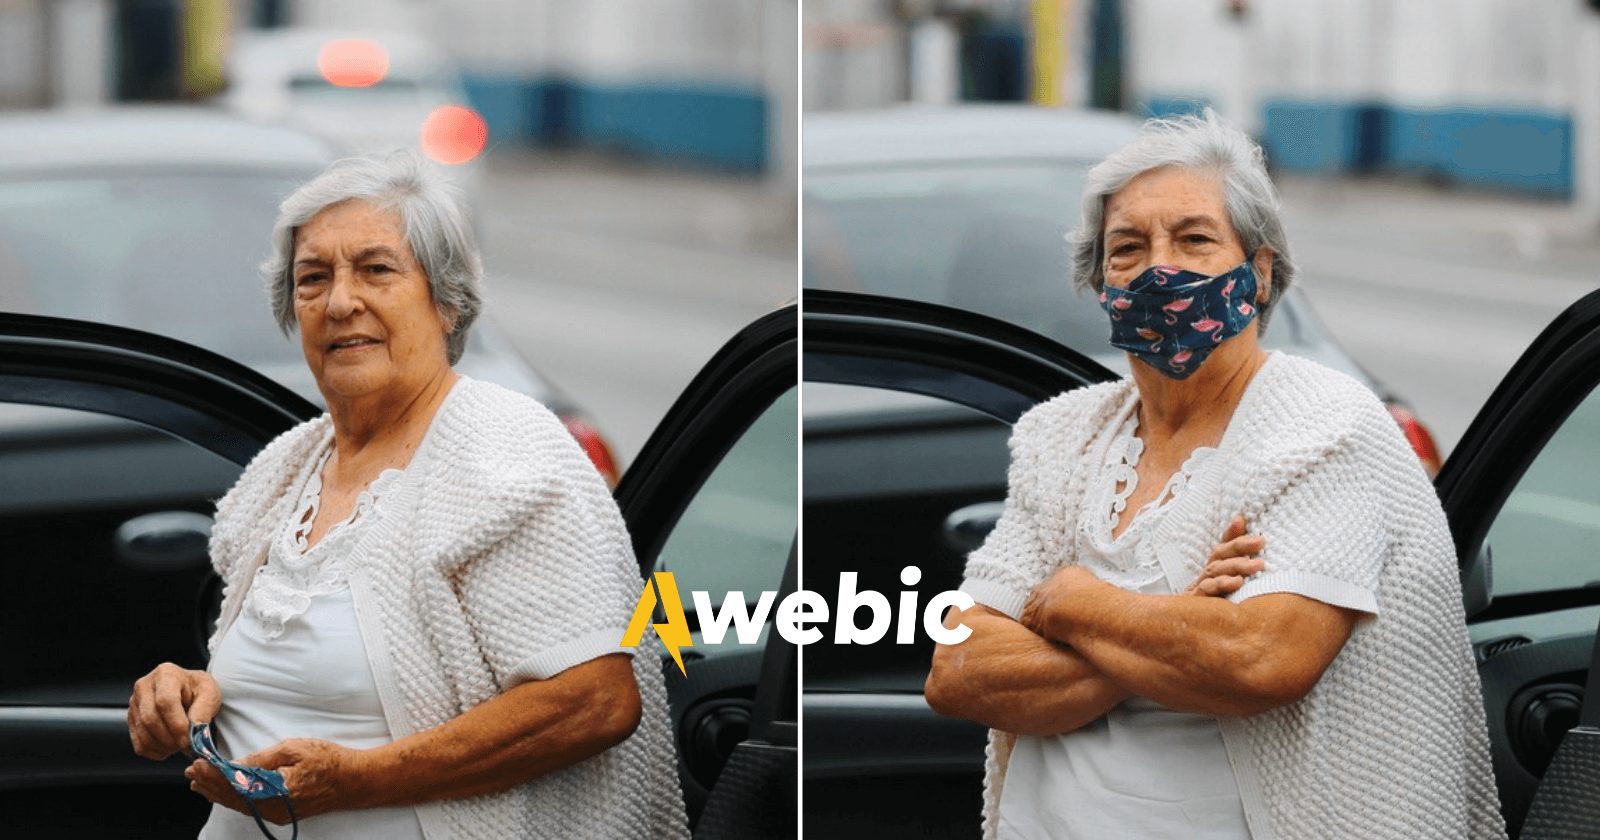 Apaixonada por dirigir, idosa se torna a adorável 'Vovó do Uber' aos 73 anos